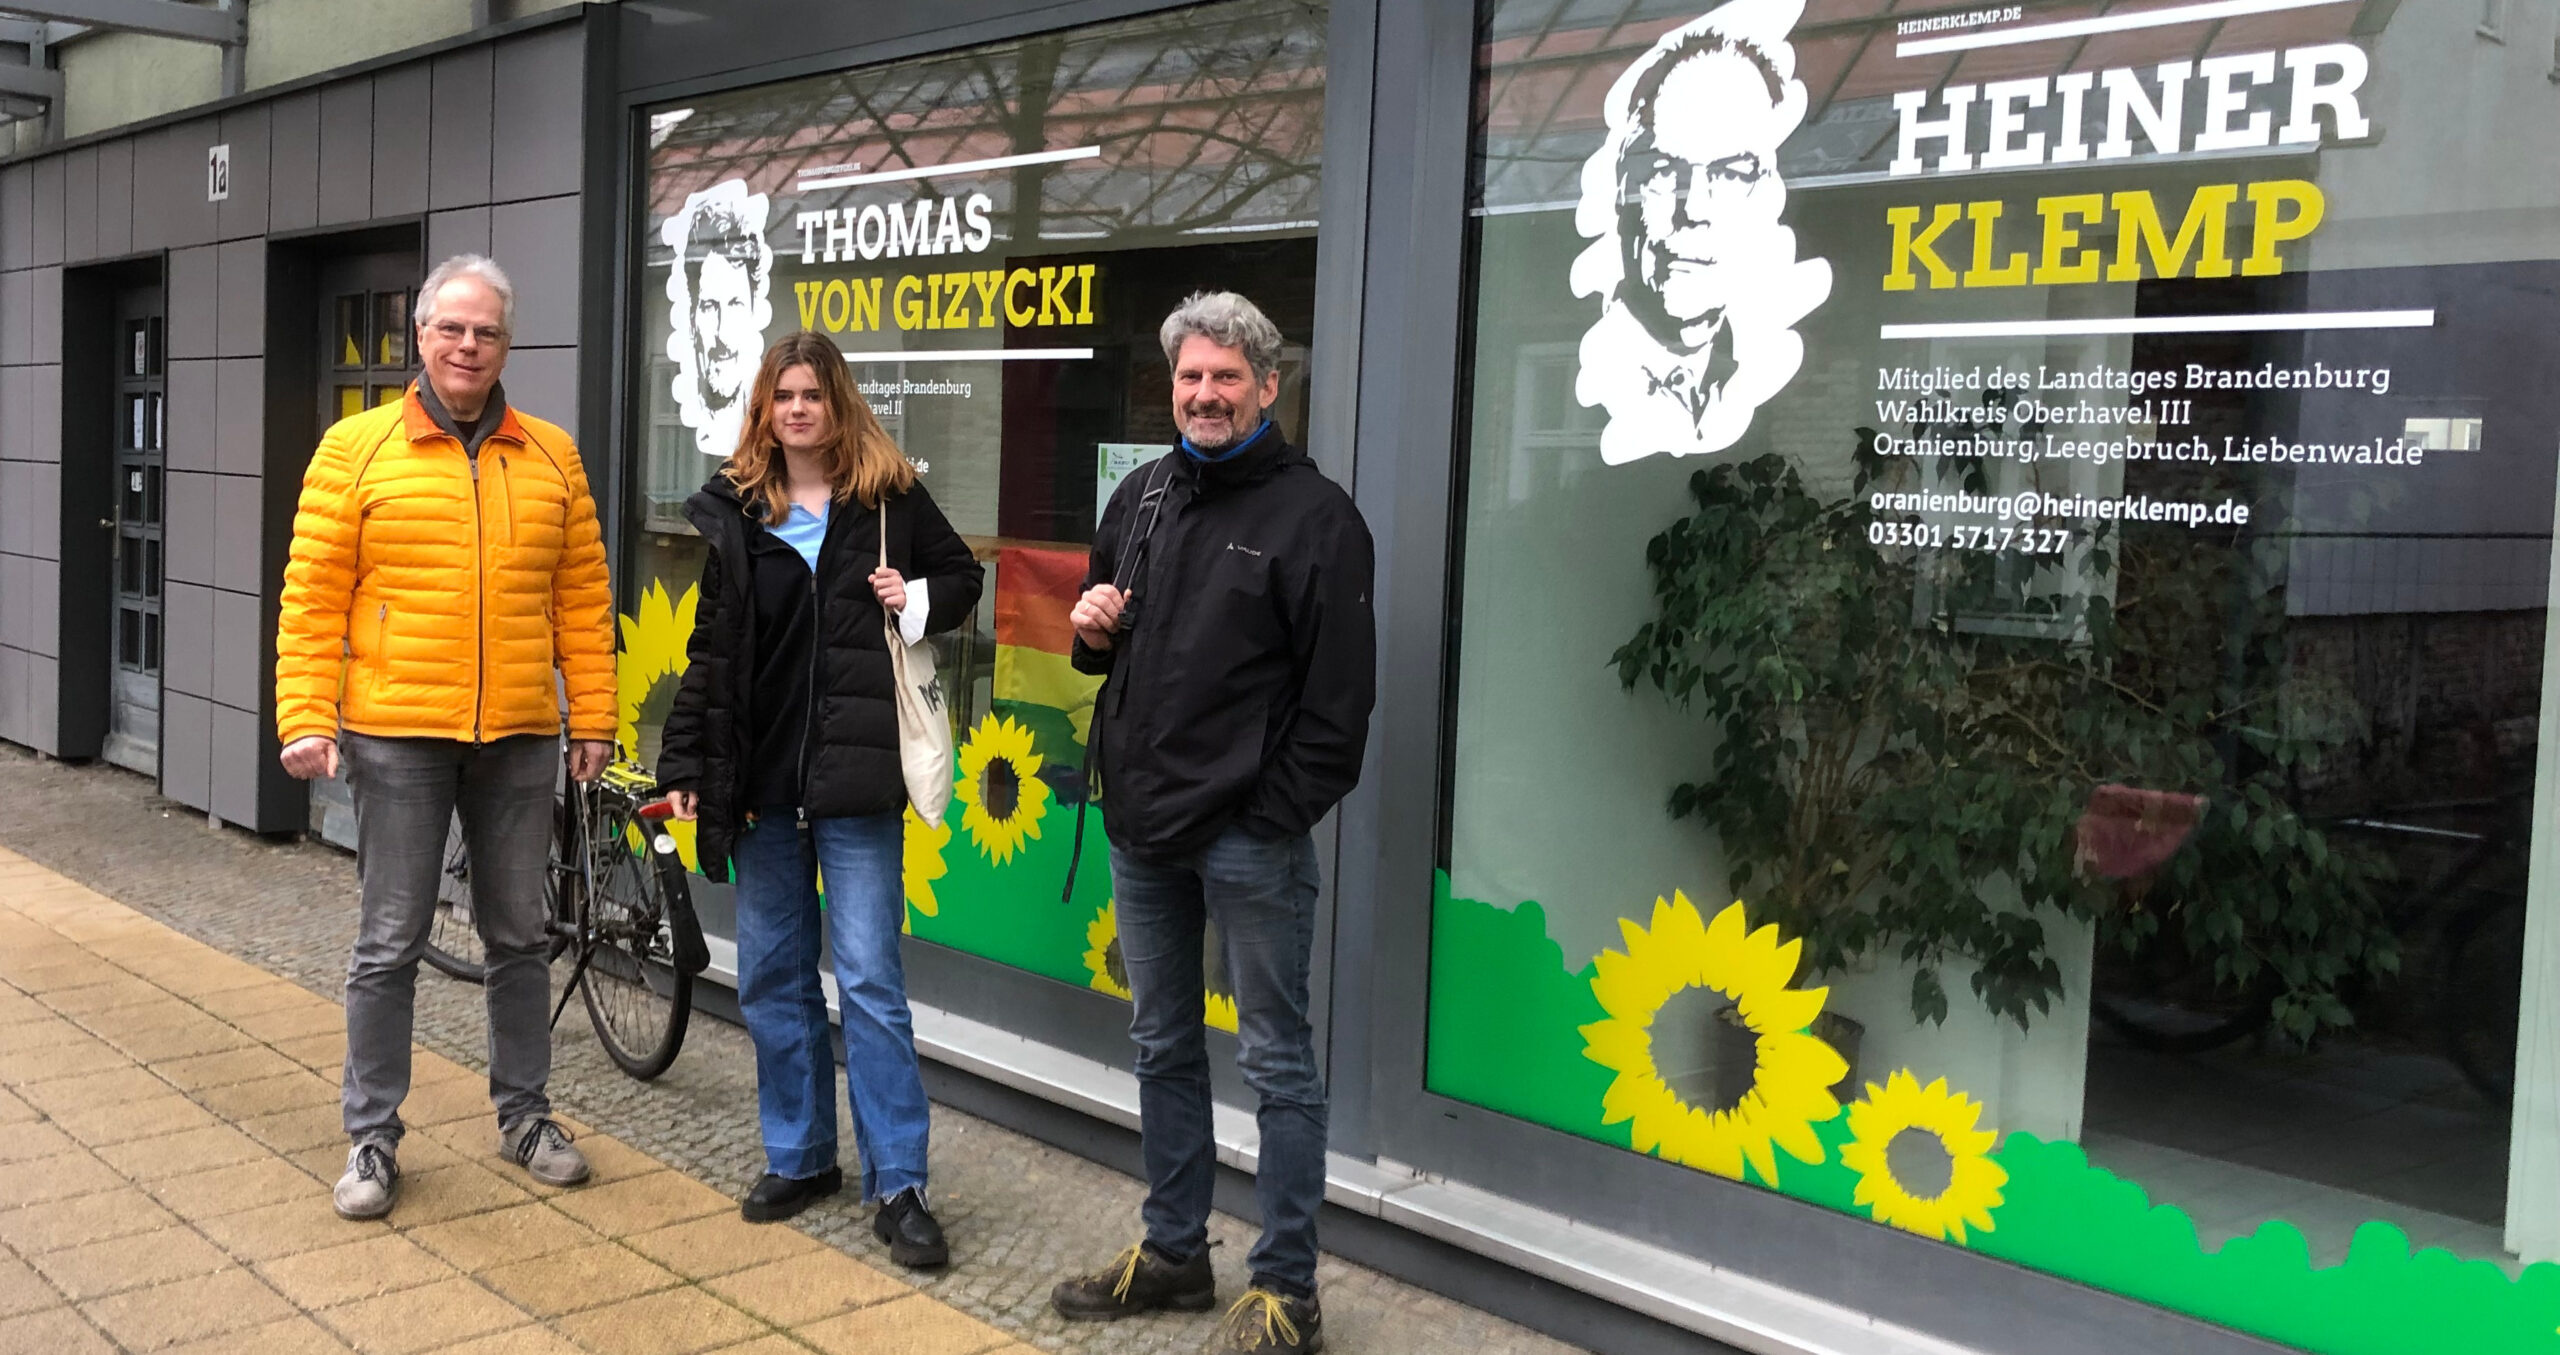 Schülerpraktikantin Charlotte Buttig mit Heiner Klemp und Thomas von Gizycki vor dem Oranienburger Wahlkreisbüro.